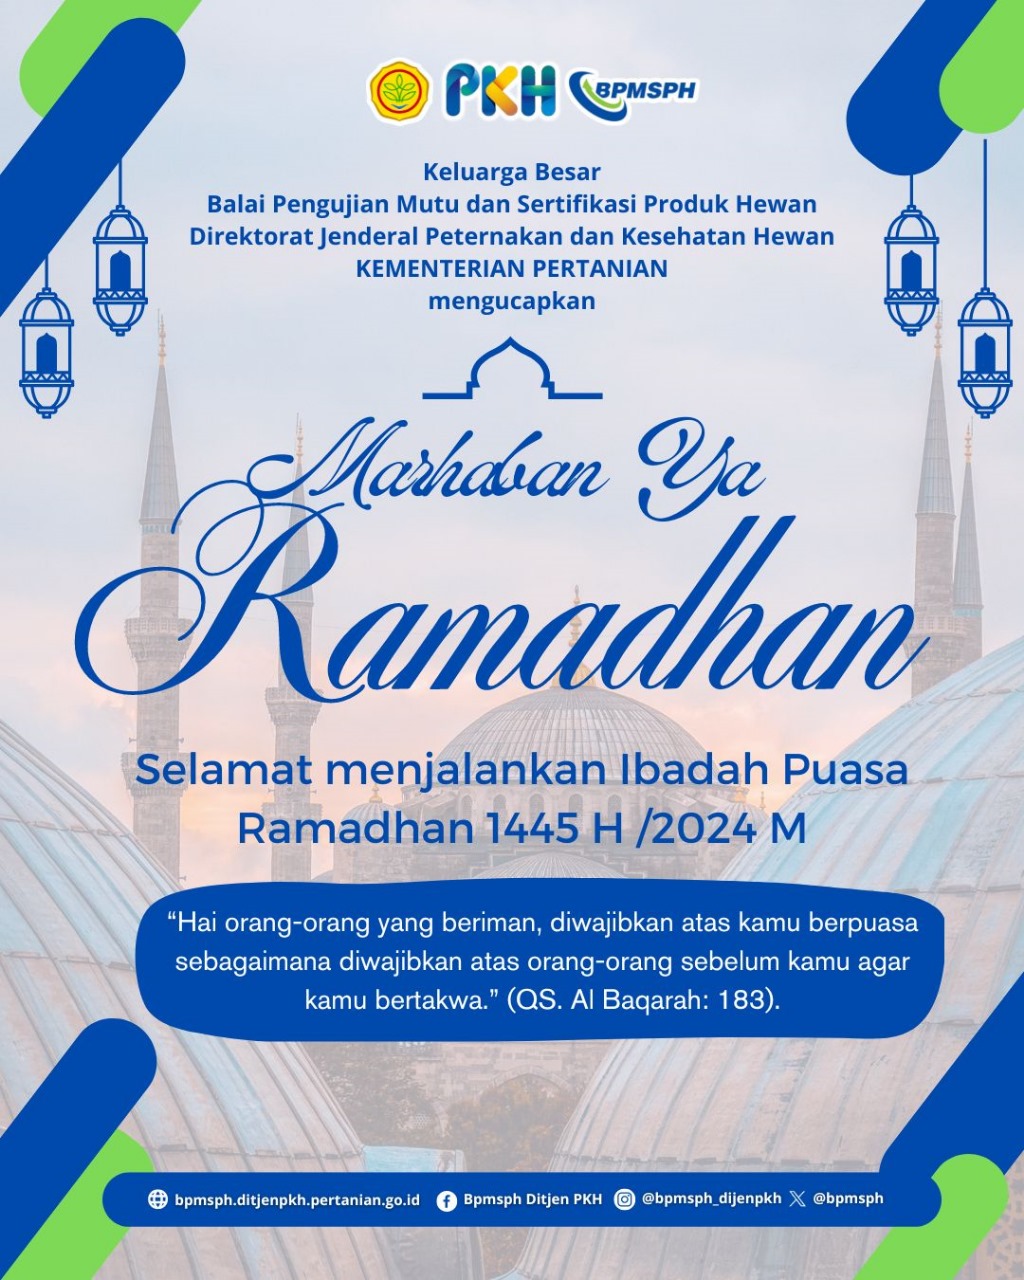 Selamat Menjalankan Ibadah Puasa Ramadhan 1445 H/2024 M